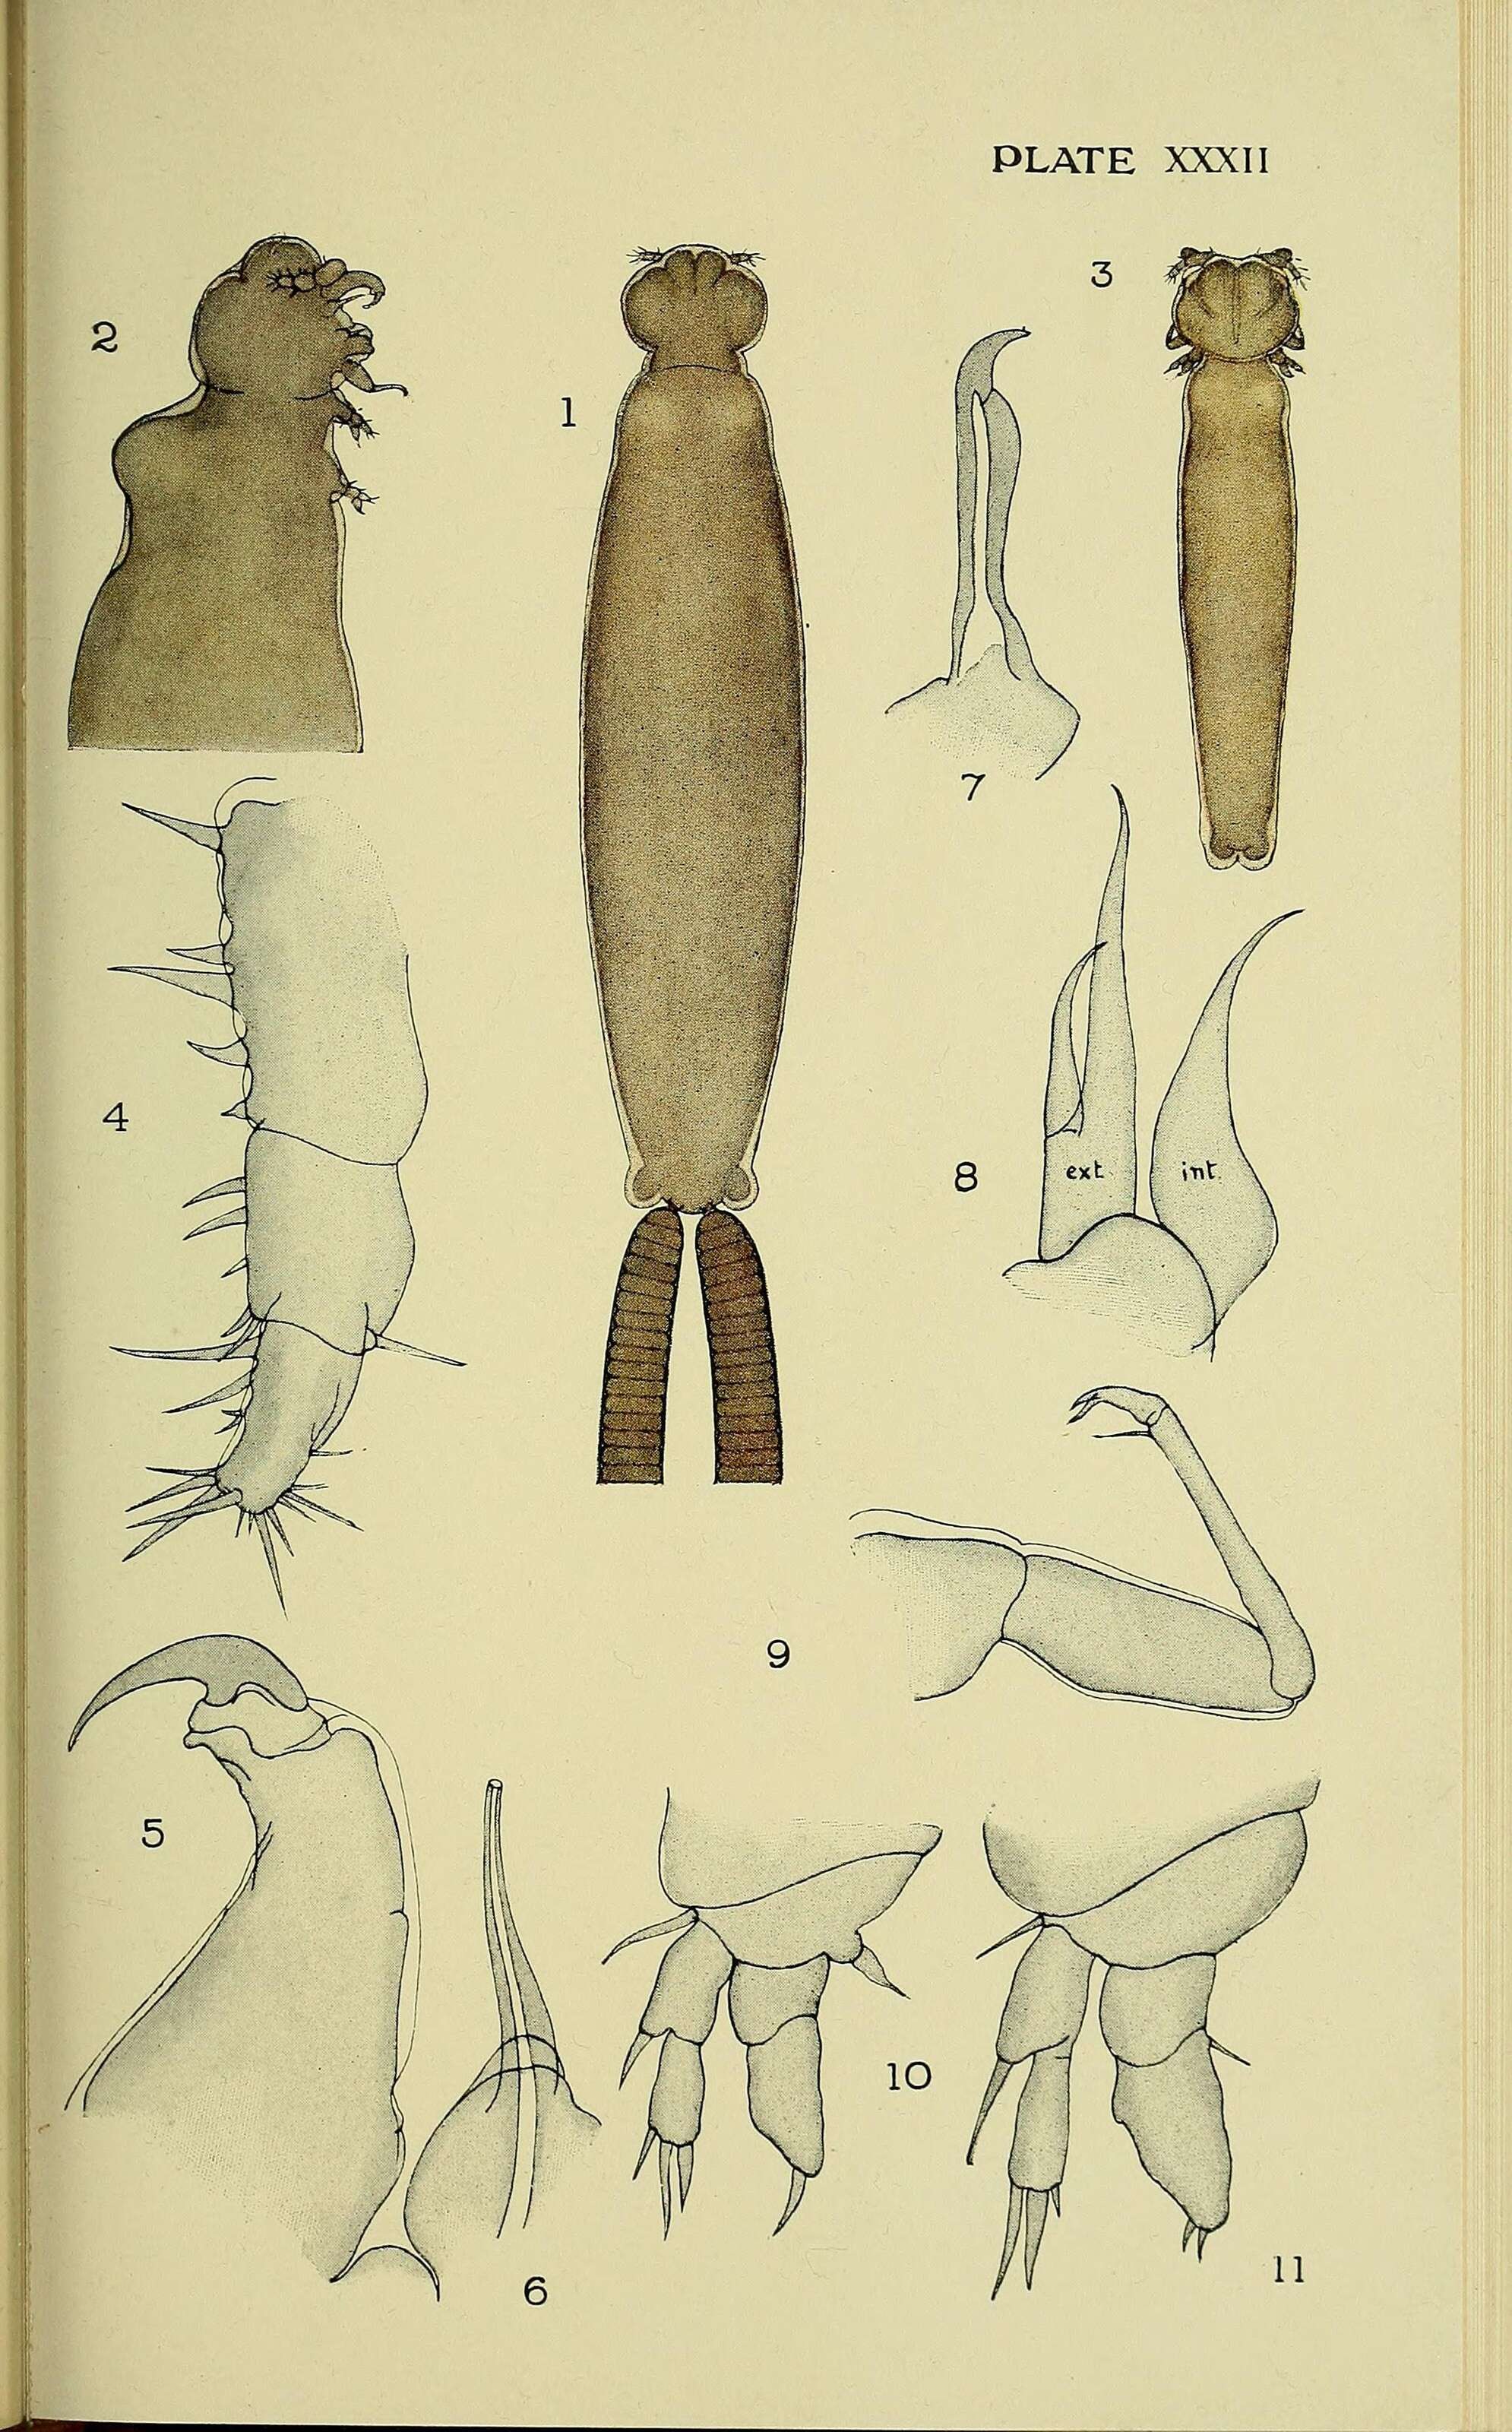 Sivun Siphonostomatoida Burmeister 1835 kuva